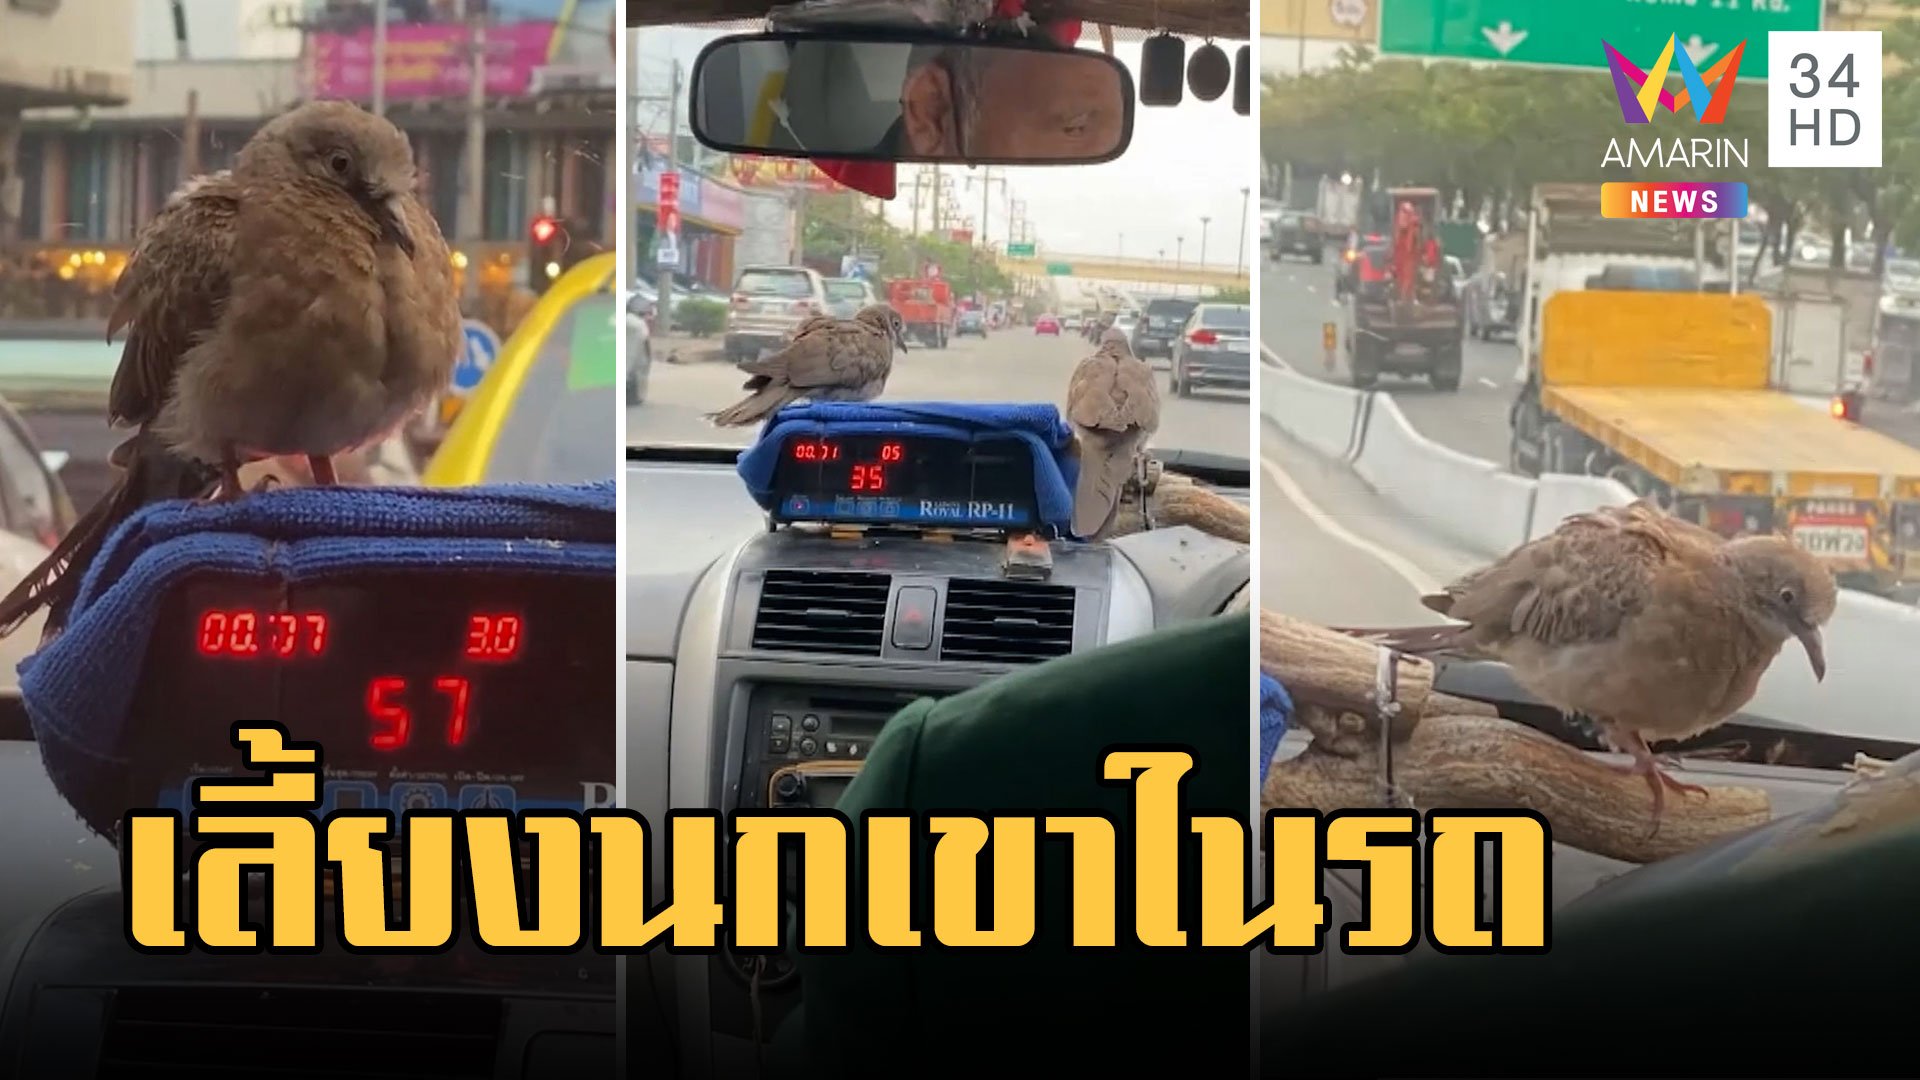 อะเมซิ่งไทยแลนด์! นั่งแท็กซี่แบบชมนกชมไม้ สัมผัสแบบใกล้ตัว | ข่าวอรุณอมรินทร์ | 18 ก.พ. 66 | AMARIN TVHD34